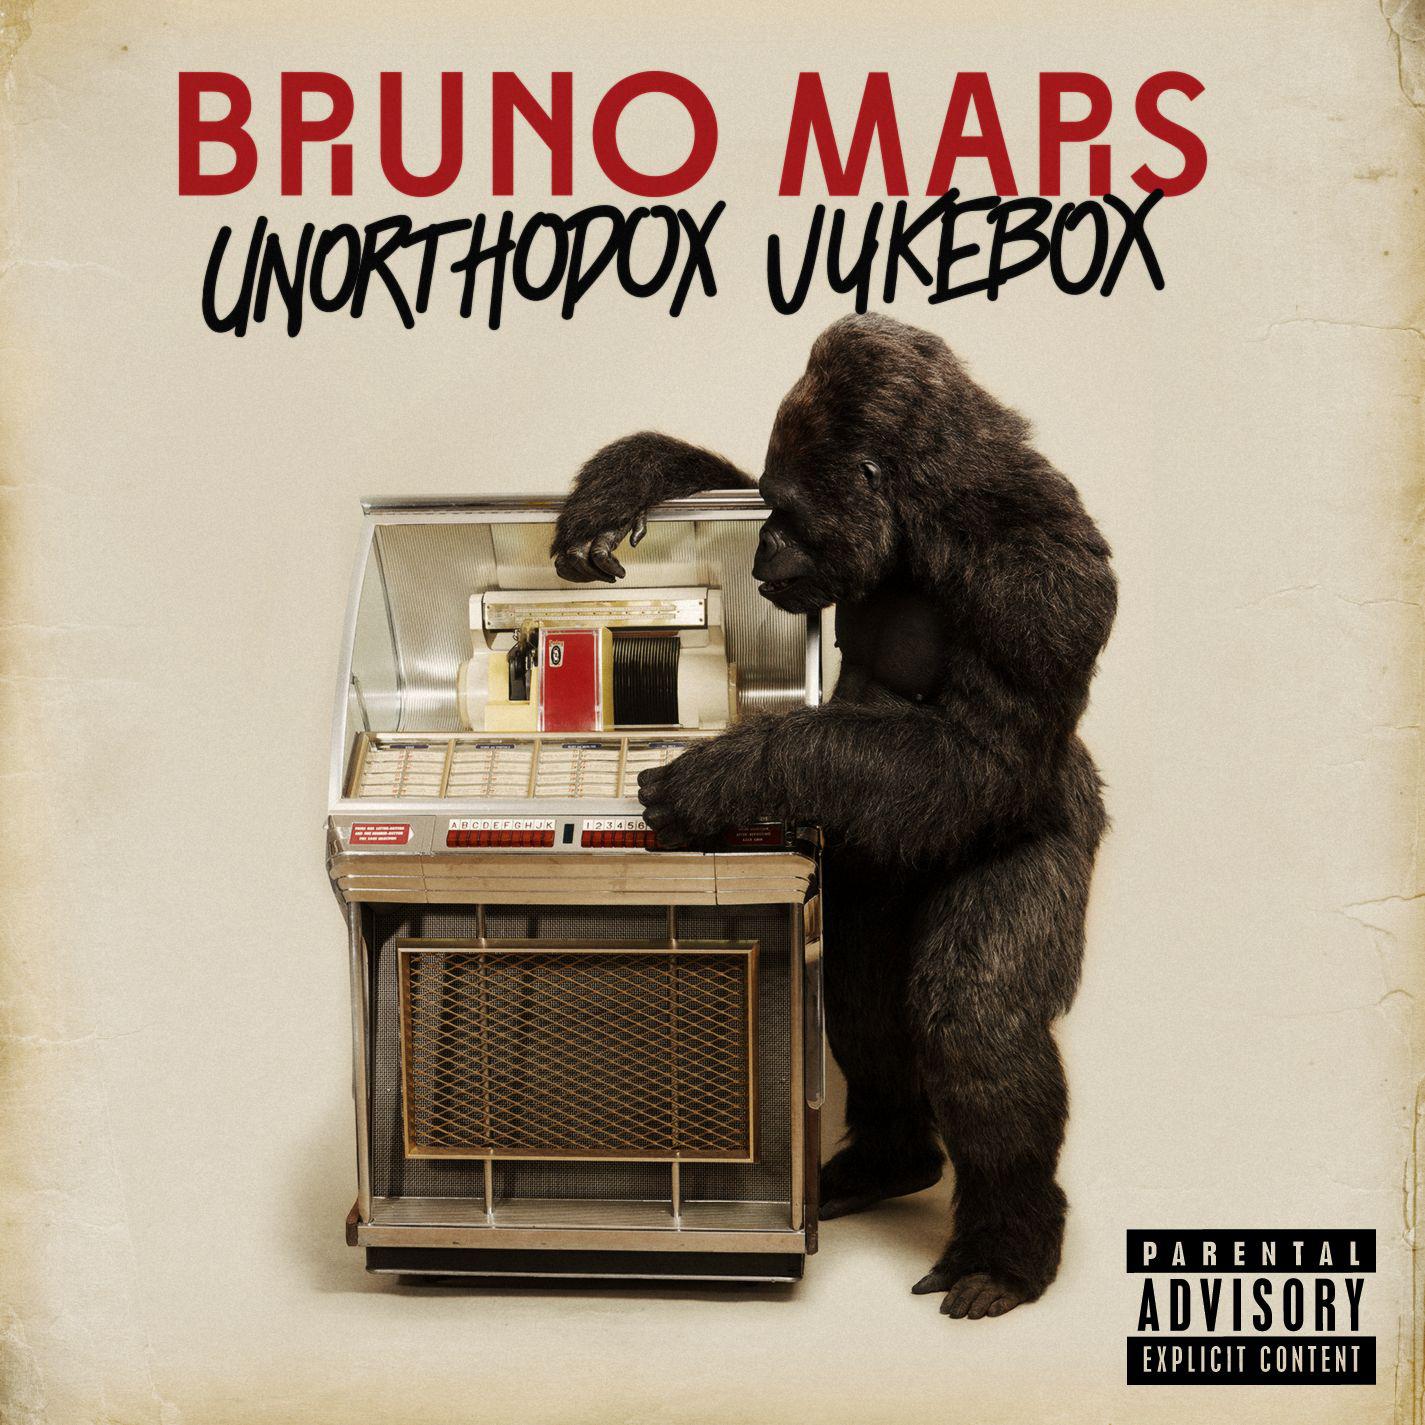 Treasure歌词 歌手Bruno Mars-专辑Unorthodox Jukebox-单曲《Treasure》LRC歌词下载